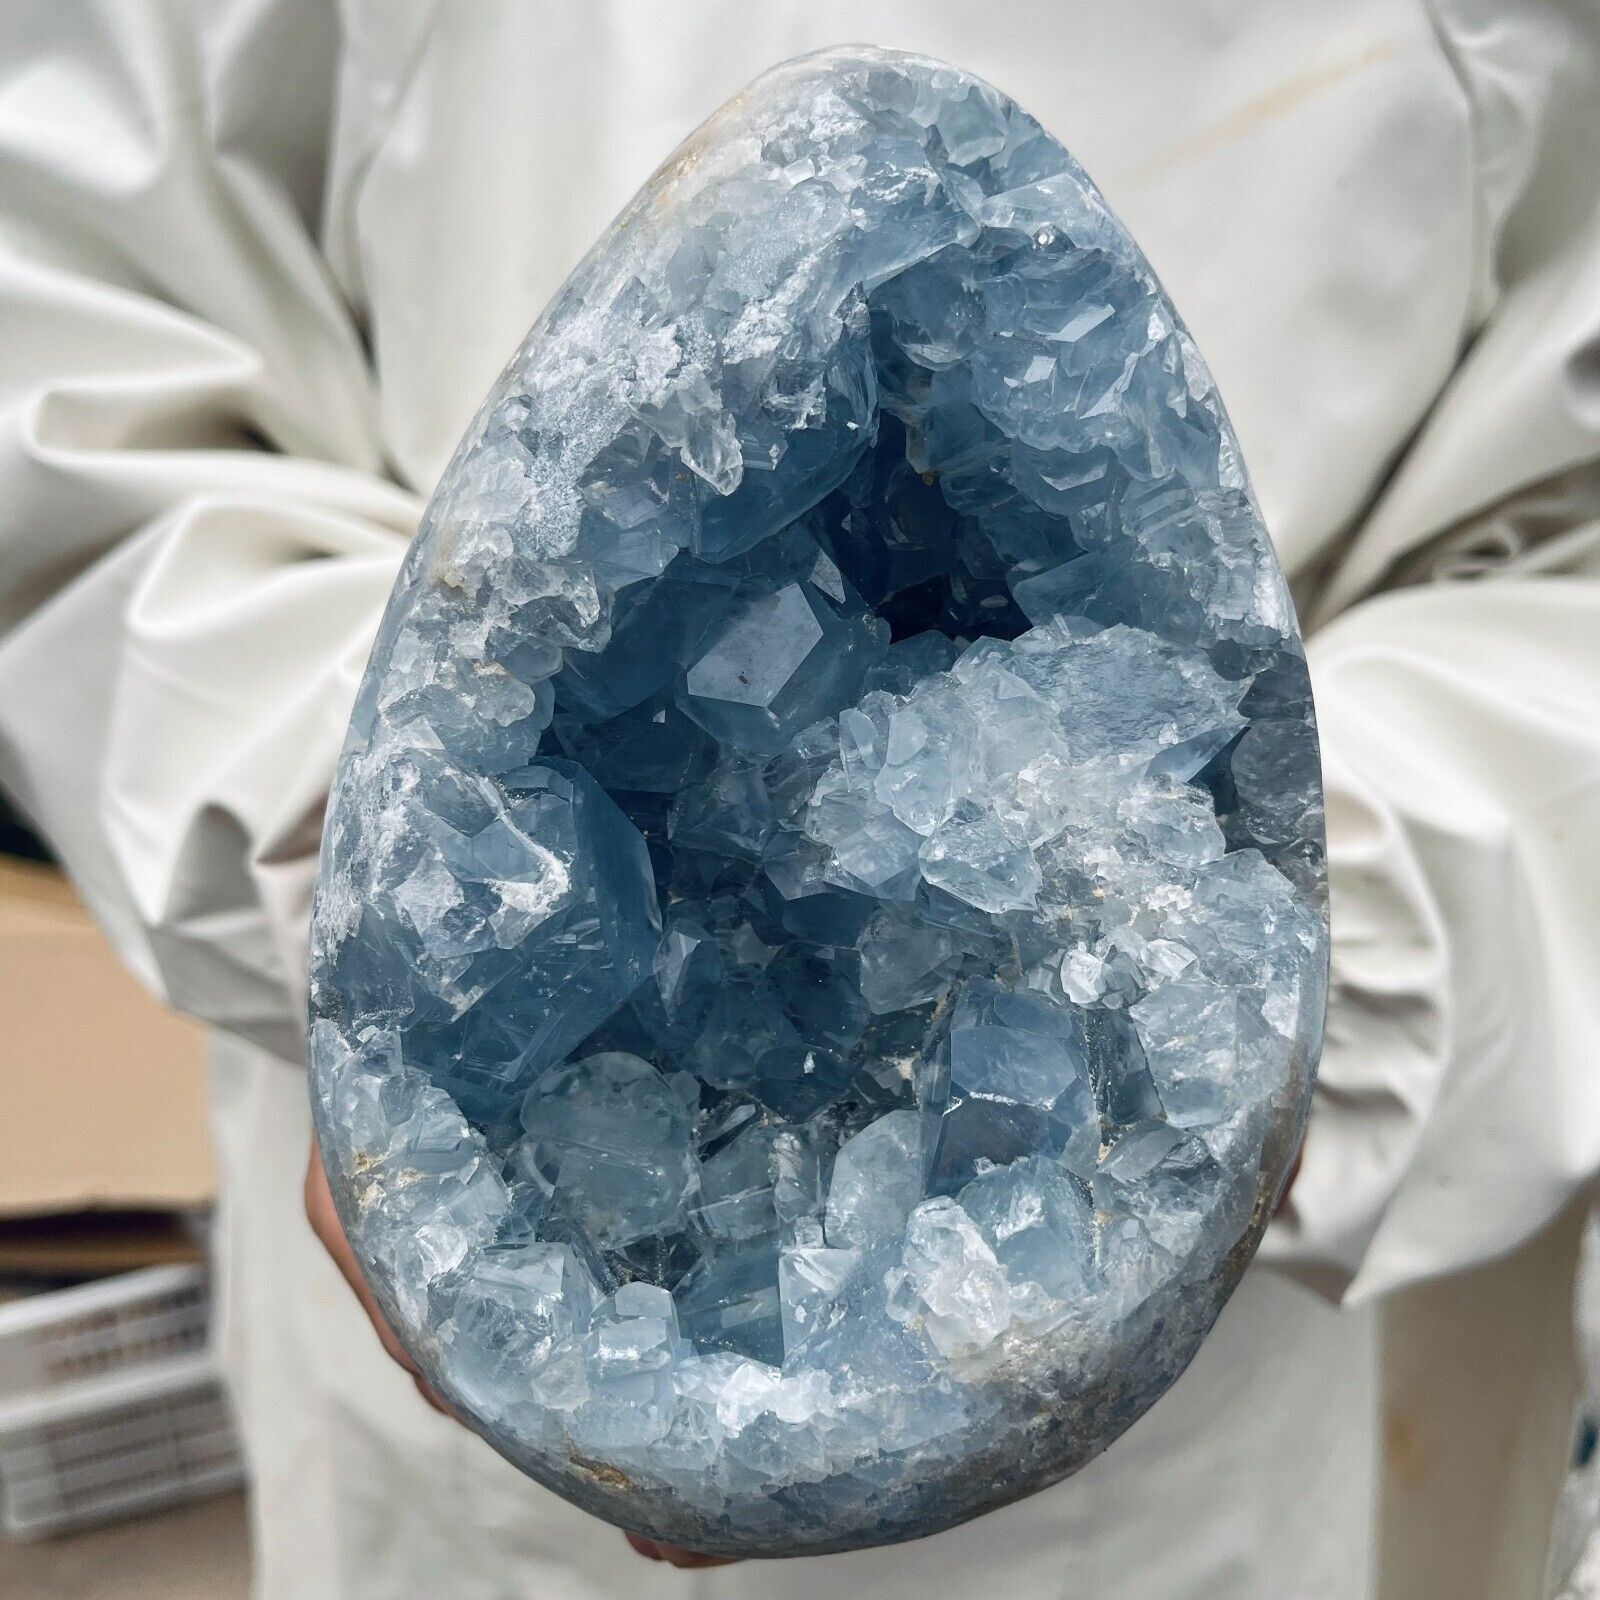 6.9LB Natural Blue Celestite Crystal Geode Cave Mineral Specimen Healing